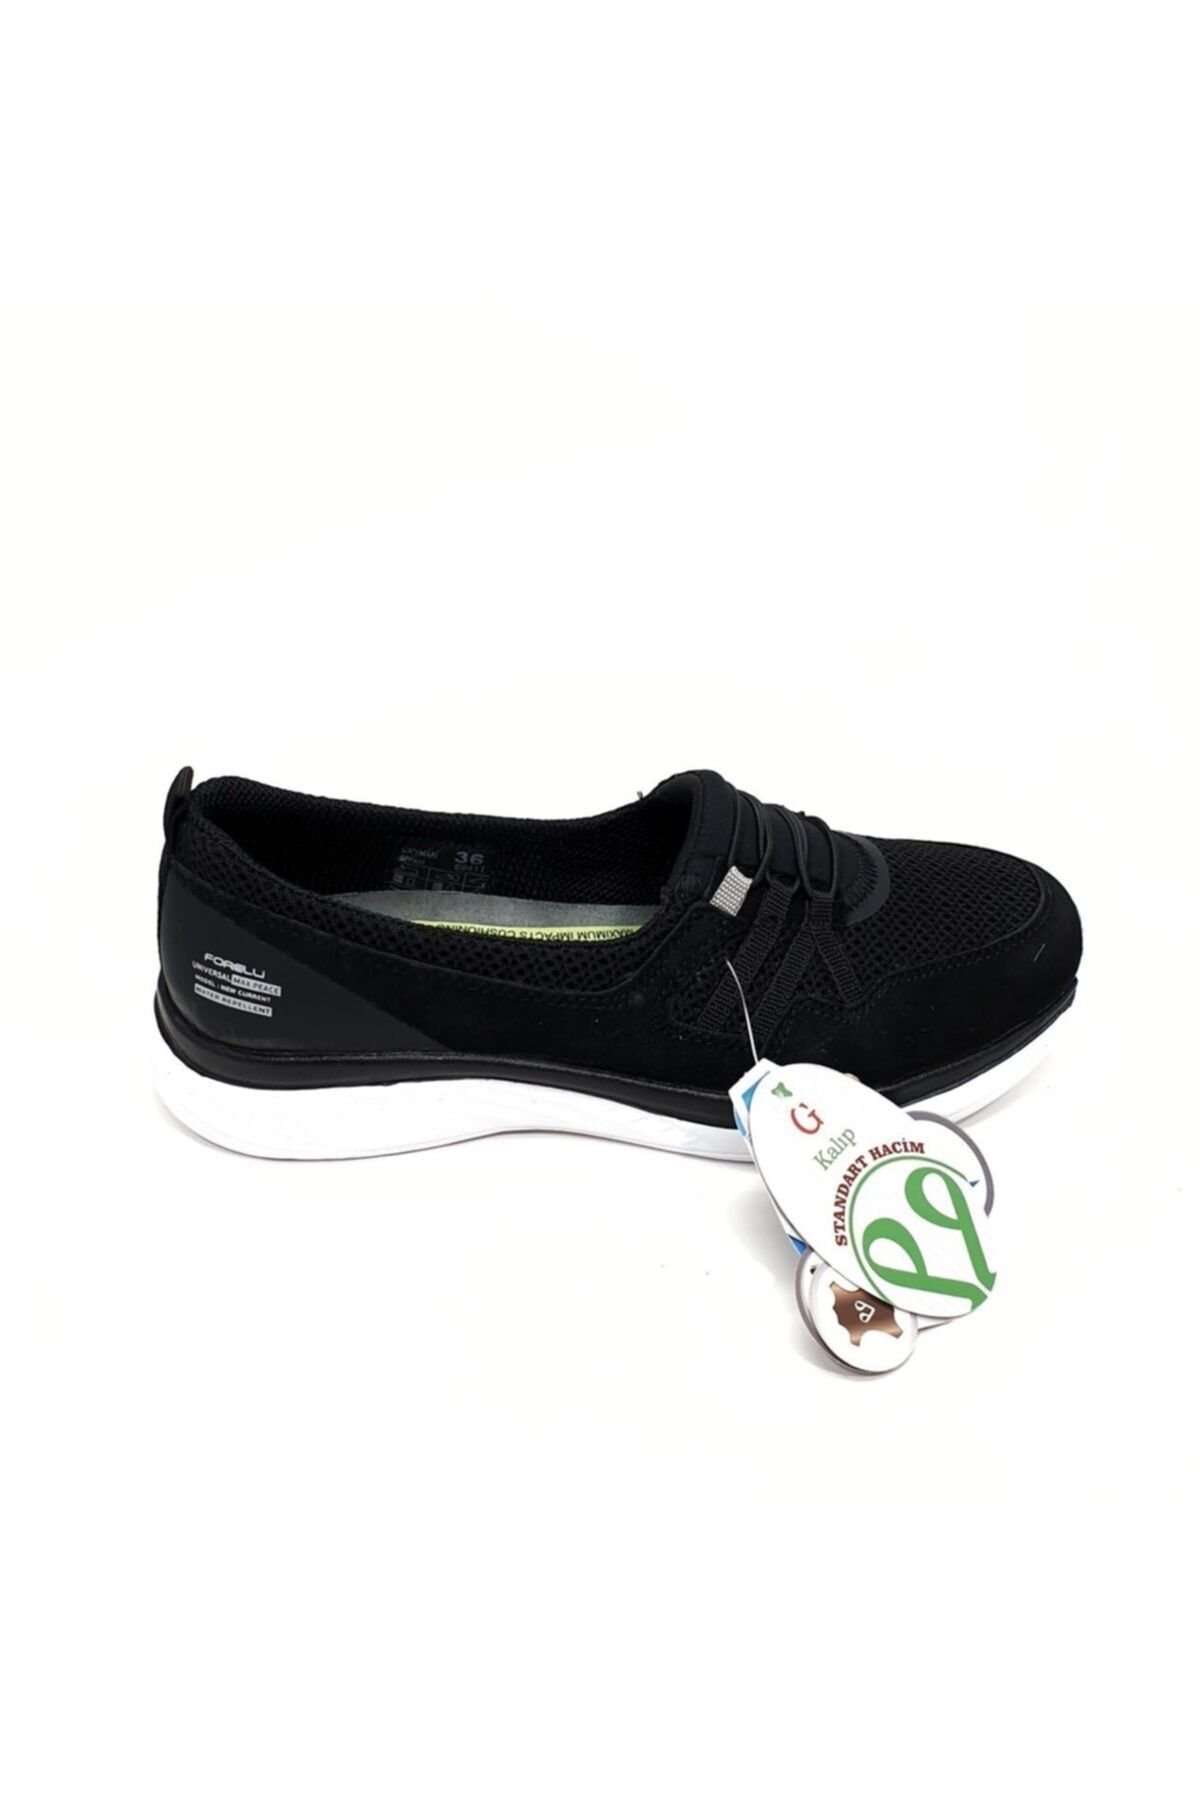 Forelli Ceyhan-g Anatomik Siyah-beyaz Tekstil Yürüyüş Ayakkabısı